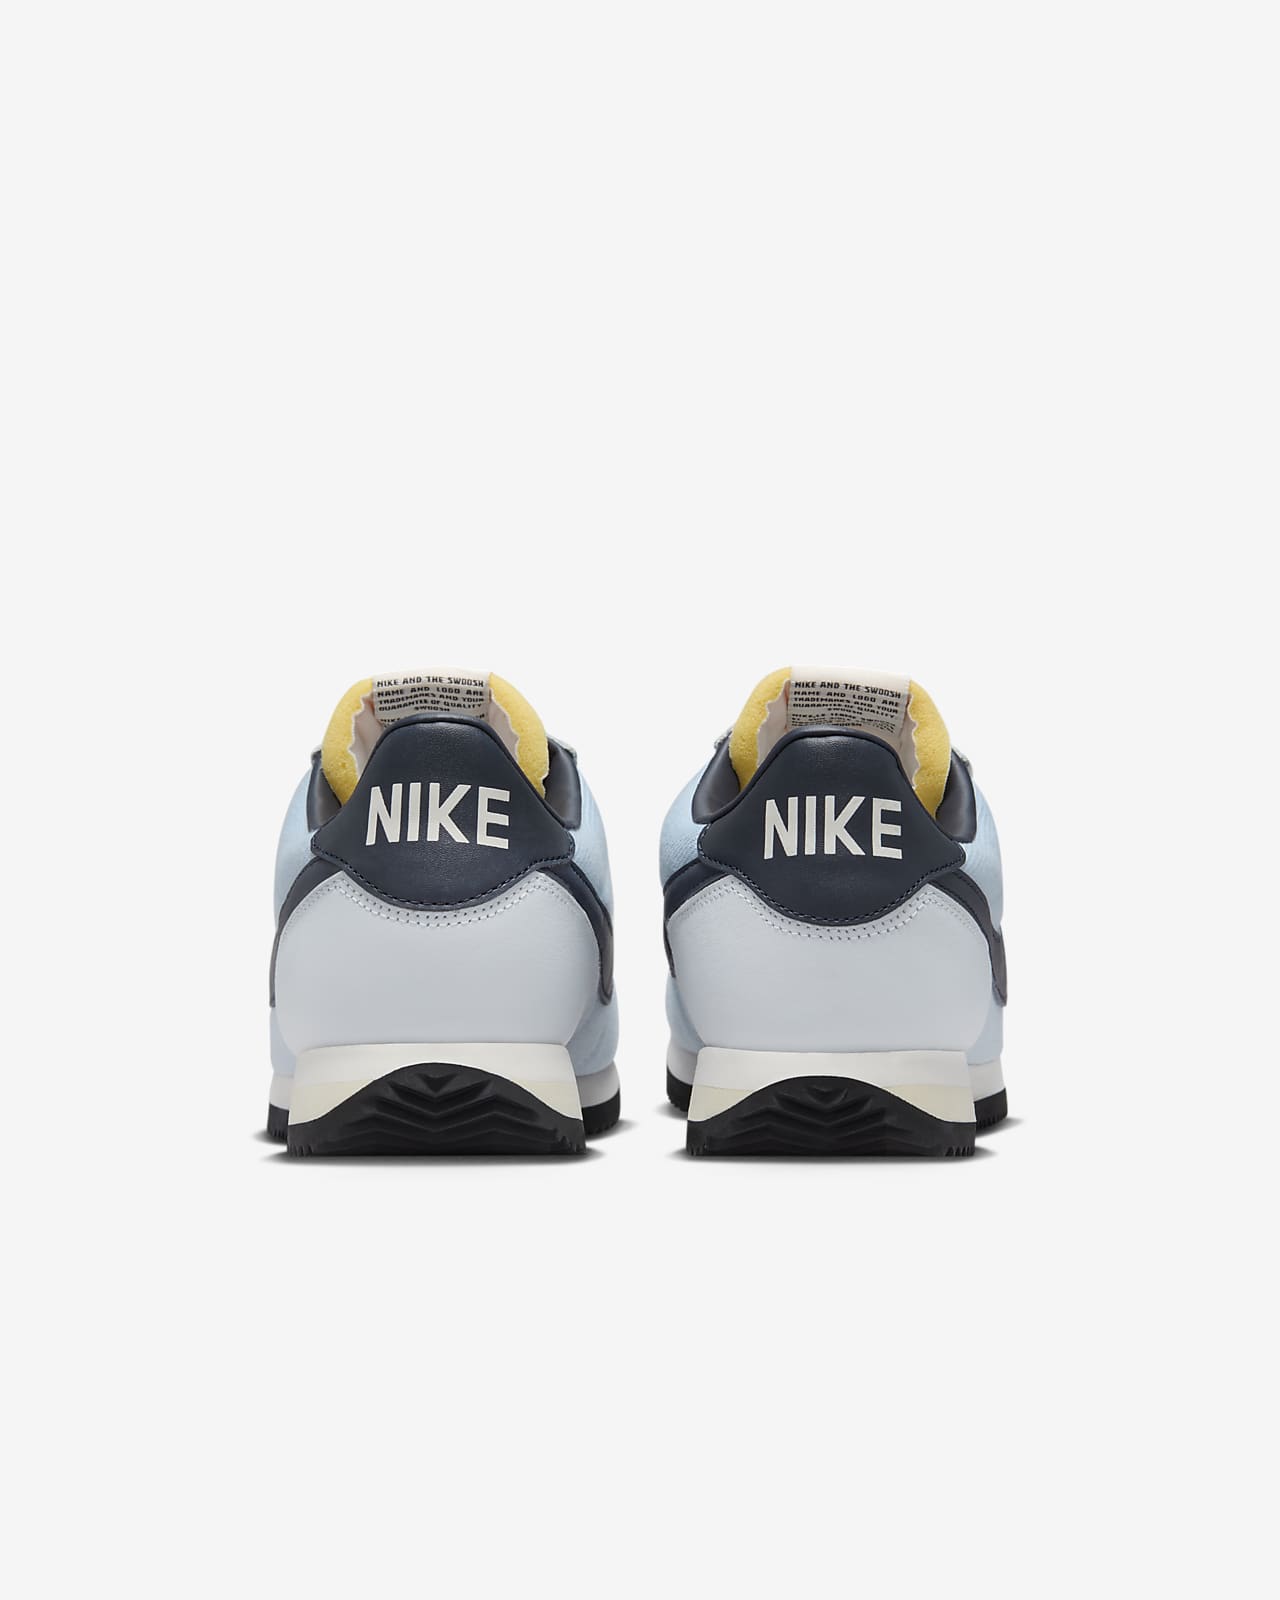 Nike Cortez Men's Shoes